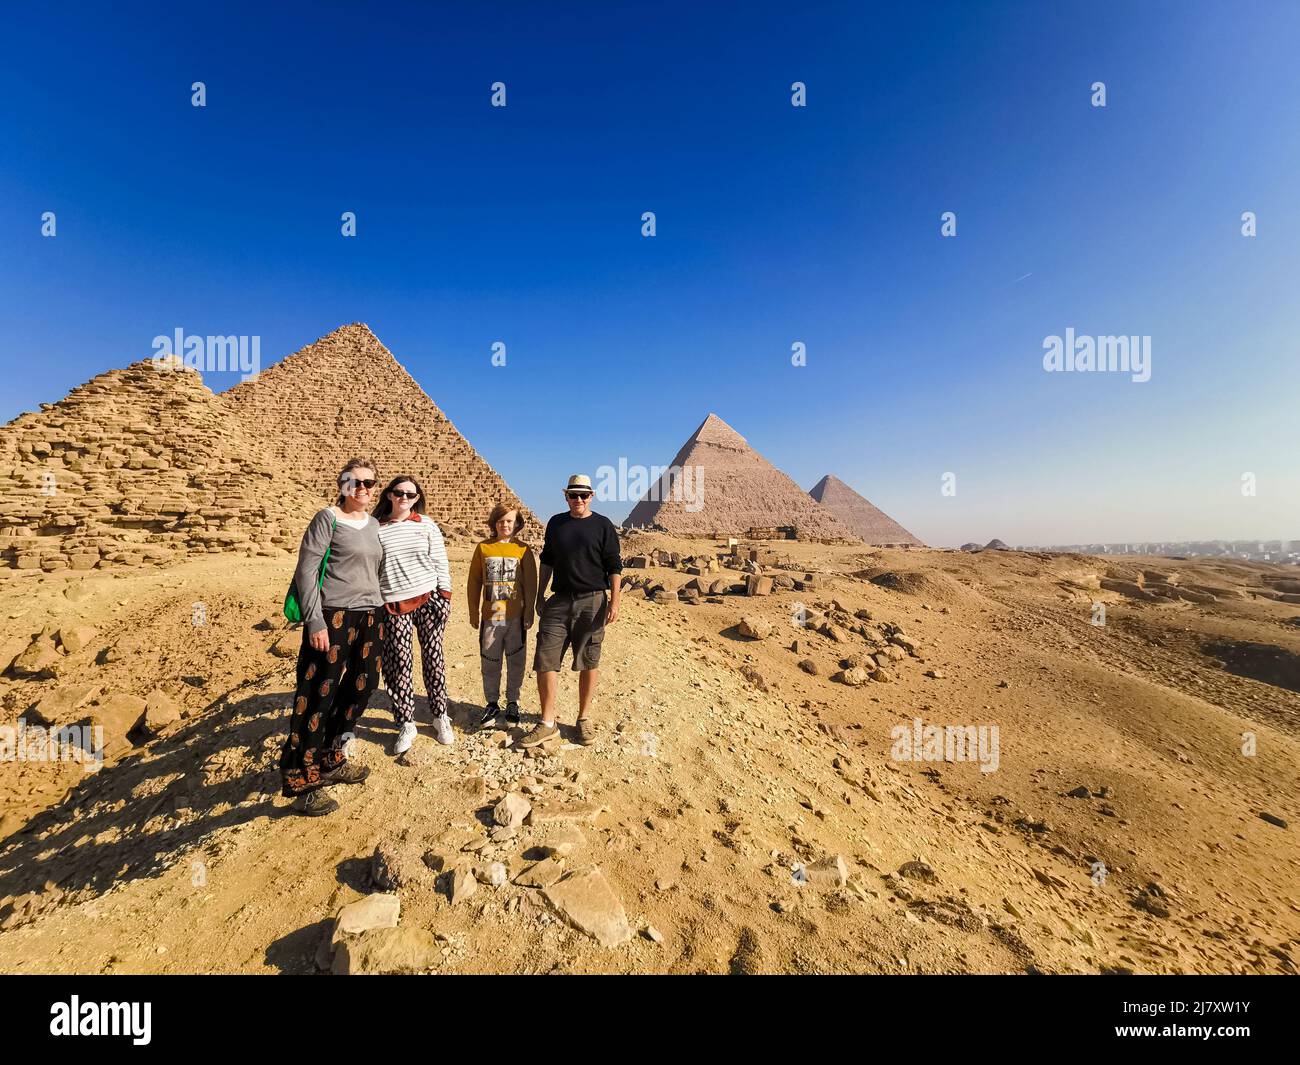 Unas vacaciones familiares a las pirámides durante el encierro sin nadie alrededor Foto de stock